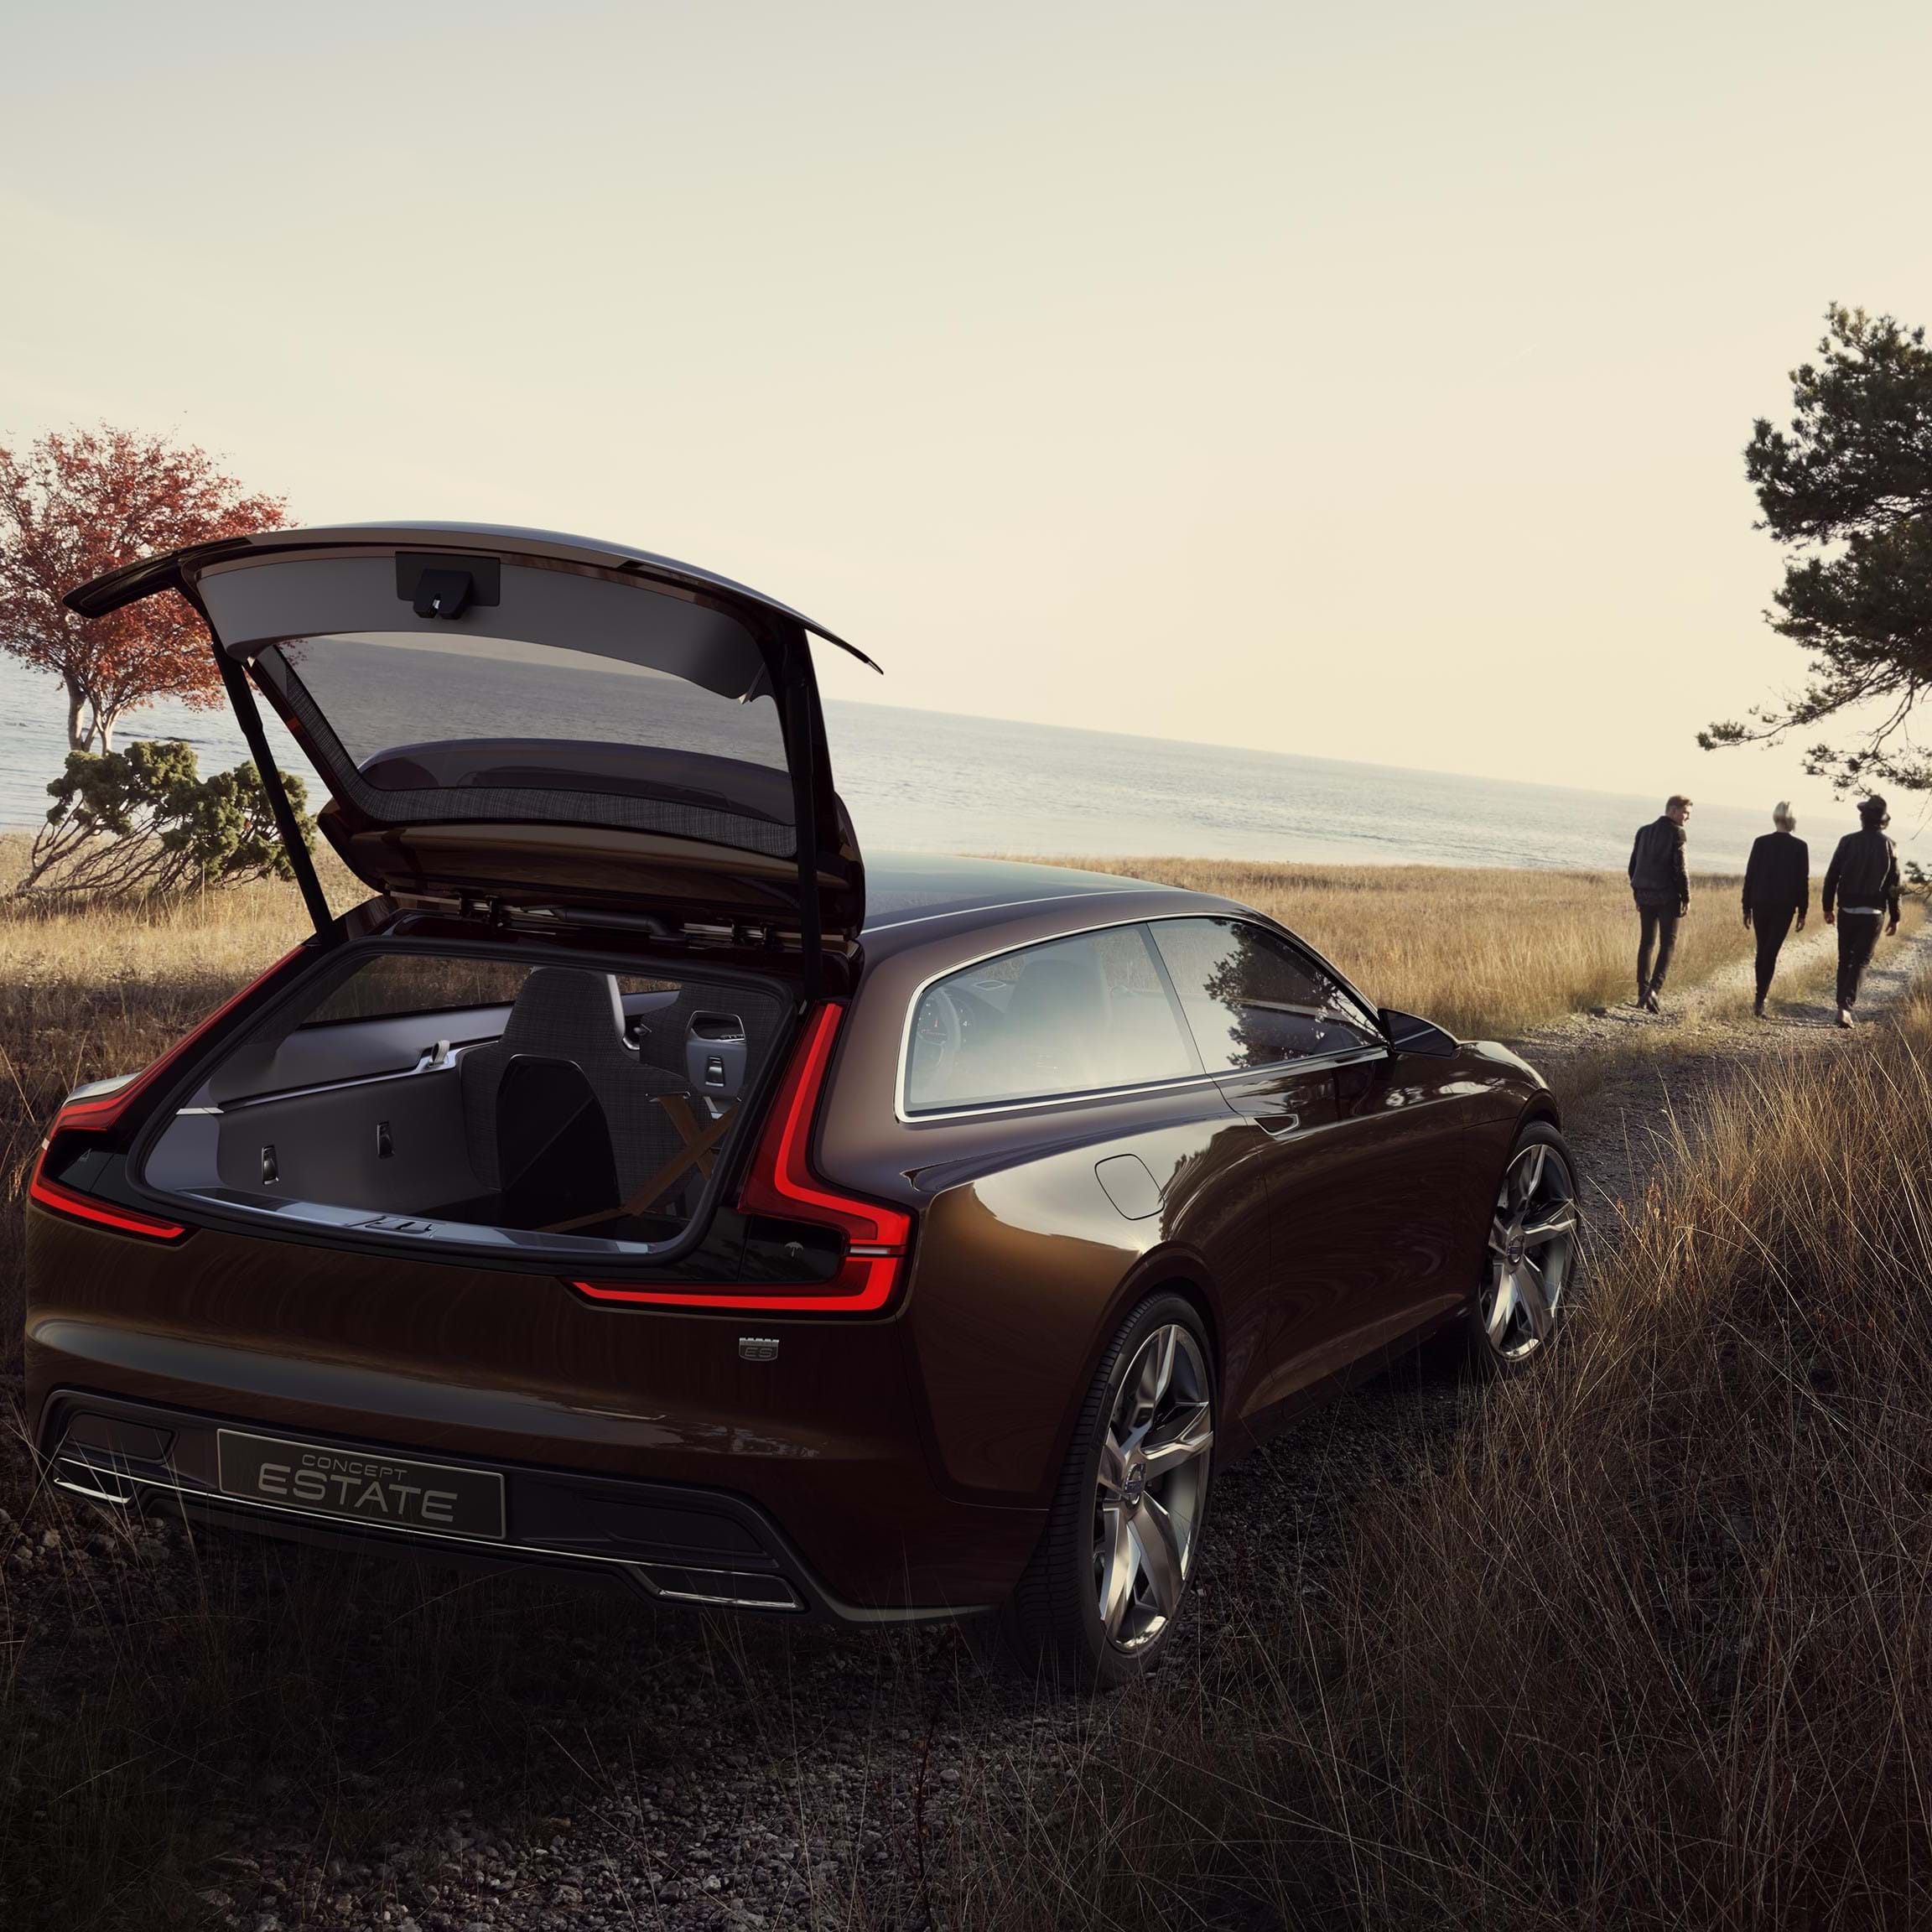 Concept Estate Volvo avec hayon ouvert montrant l’espace à bagages sur une route de campagne